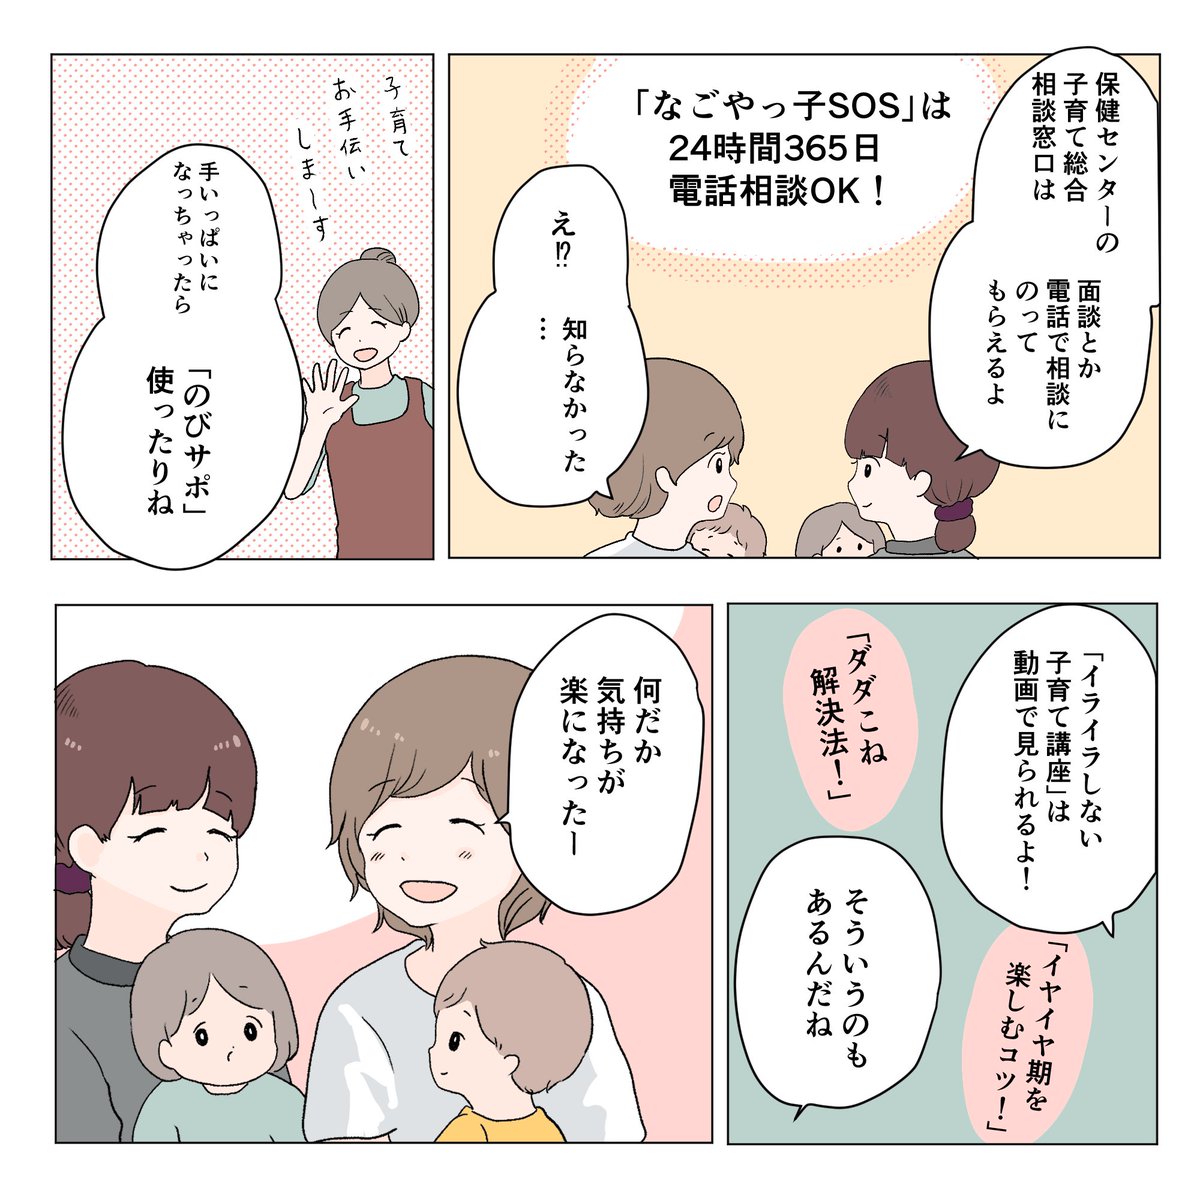 30名の漫画家が発信する名古屋市の広報プロジェクト
「#まもるはぐくむ名古屋」の企画に参加させていただきました。
私は「#児童虐待防止」について描きました。
順次名古屋広報さん@nagoya_kohoと下記で作品が公開されます。
URL:https://t.co/IdyWFYy71G
是非みてみてください! #PR 